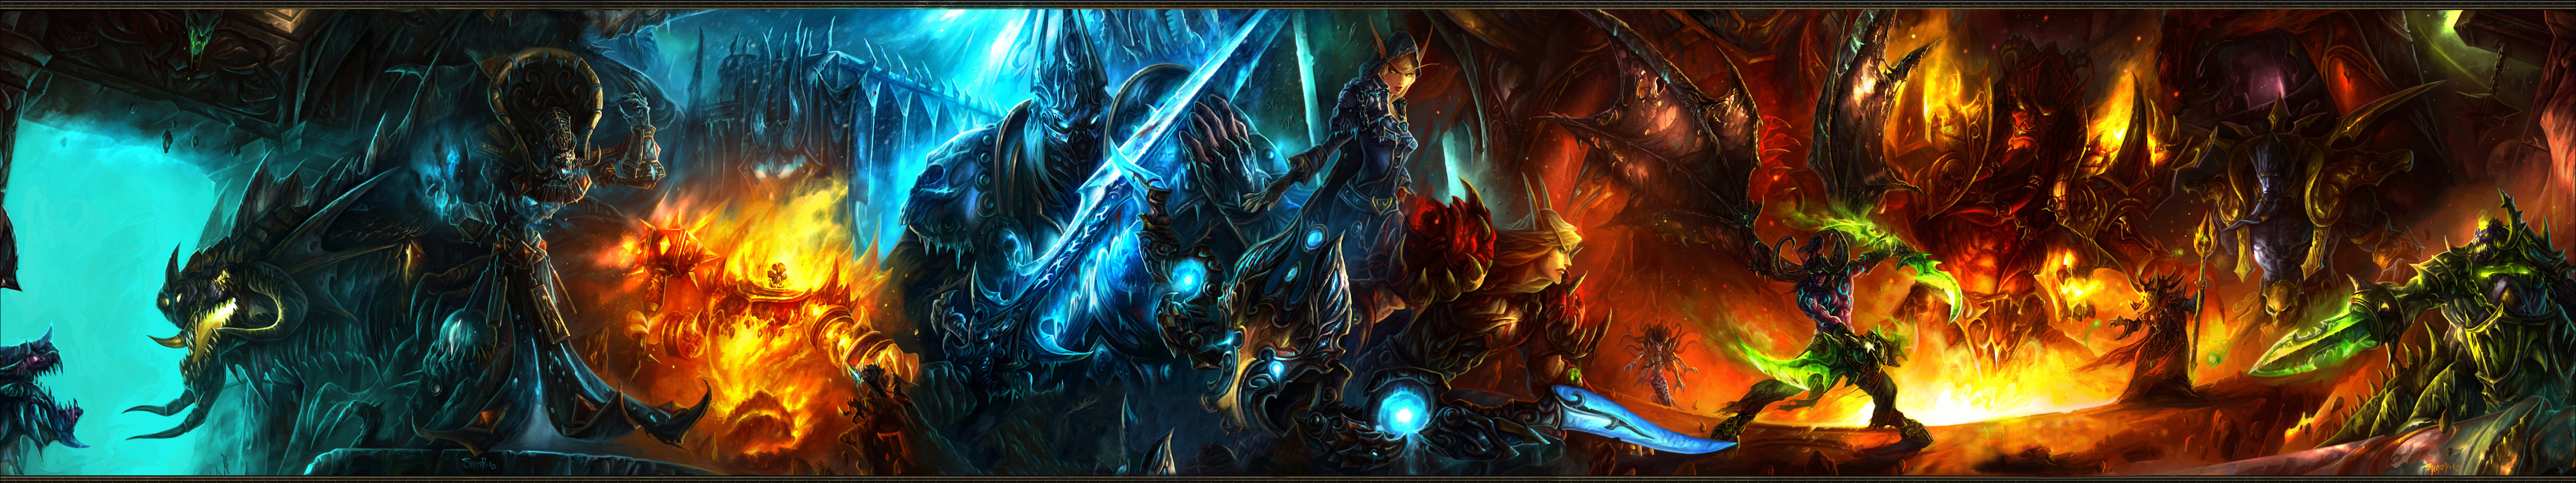 World of Warcraft là một trong những trò chơi trực tuyến phổ biến nhất trên thế giới với cốt truyện lôi cuốn và đồ họa tuyệt đẹp. Trải nghiệm thế giới này với bộ sưu tập hình nền World of Warcraft của chúng tôi.